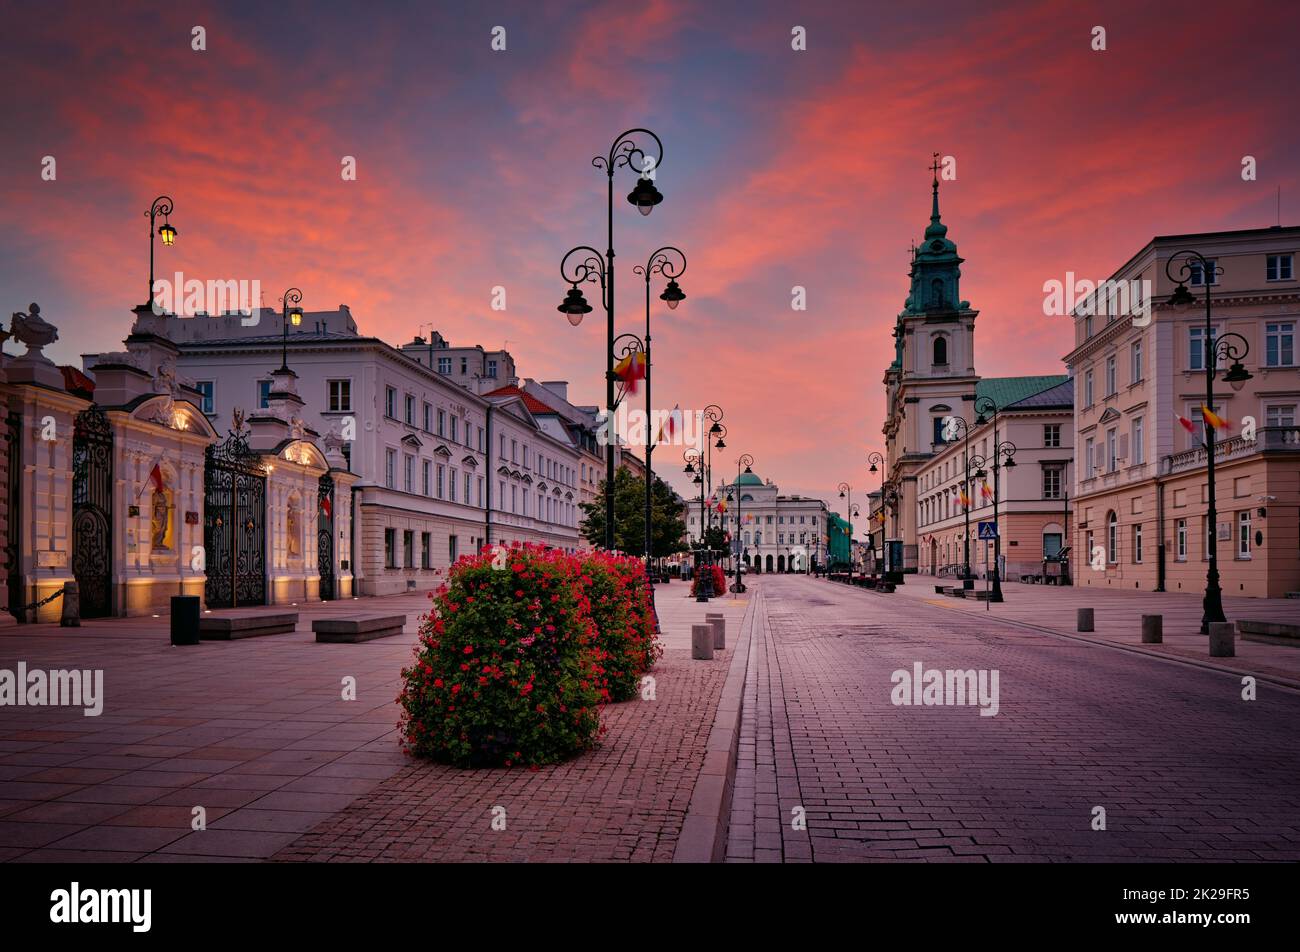 Krakowskie Przedmiescie - prestigious old street in Warsaw. University of Warsaw and Holy Cross Church Stock Photo